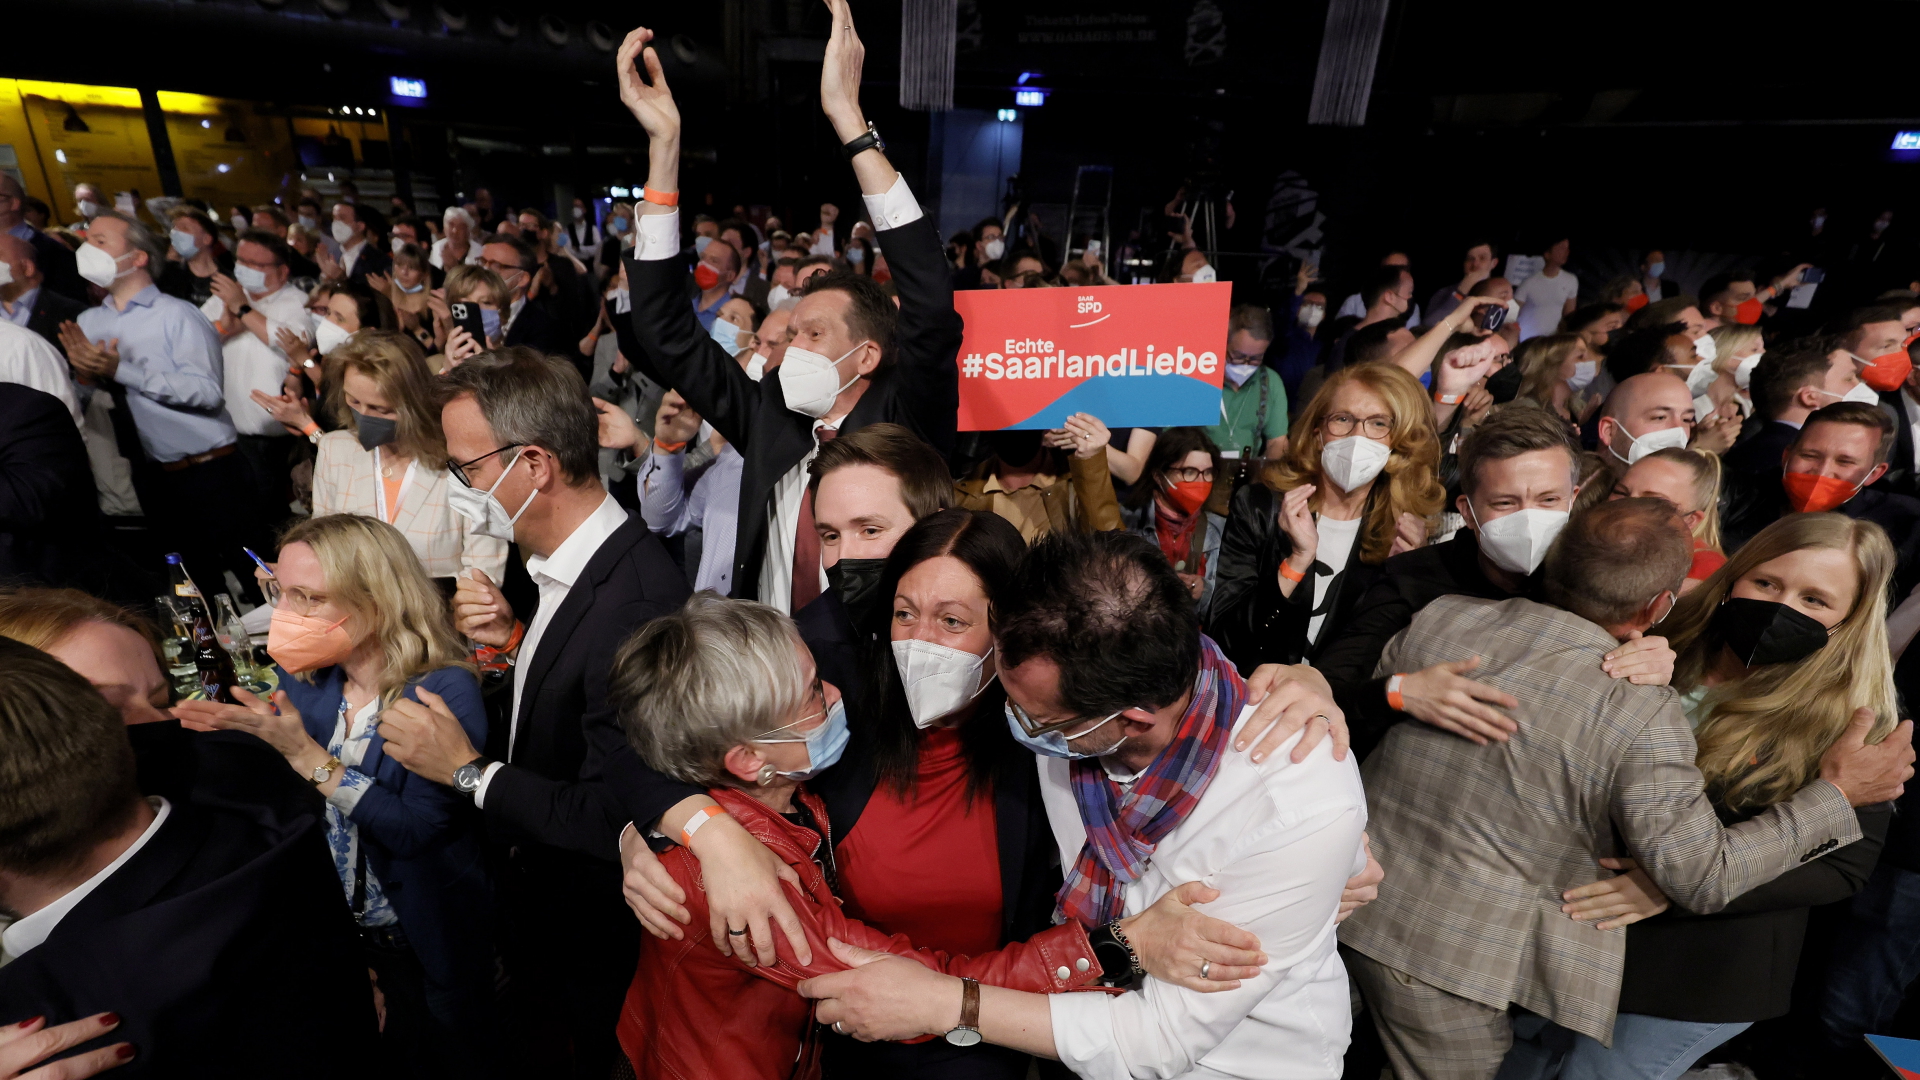 Jubel bei der SPD-Wahlparty in Saarbrücken nach Bekanntgabe des Ergebnisses. | EPA